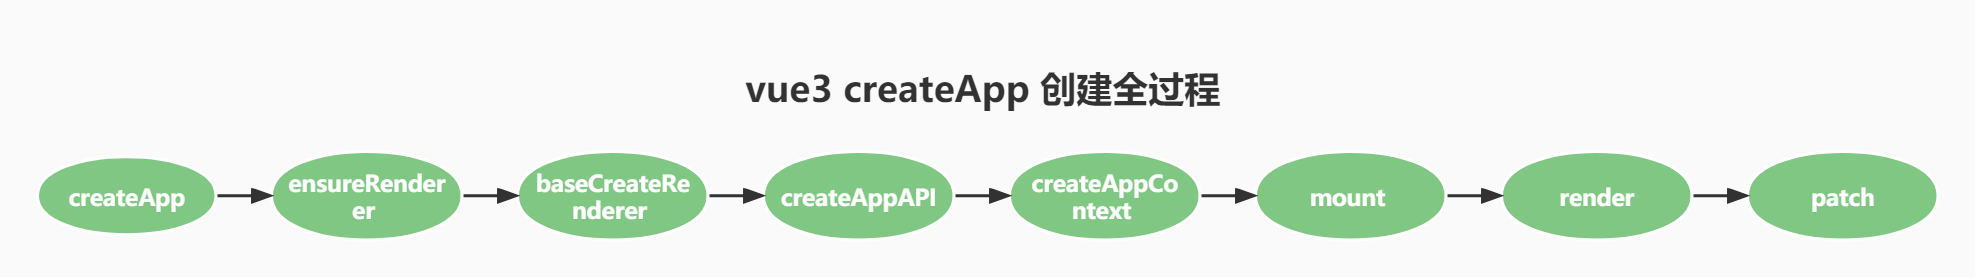 createApp整个流程